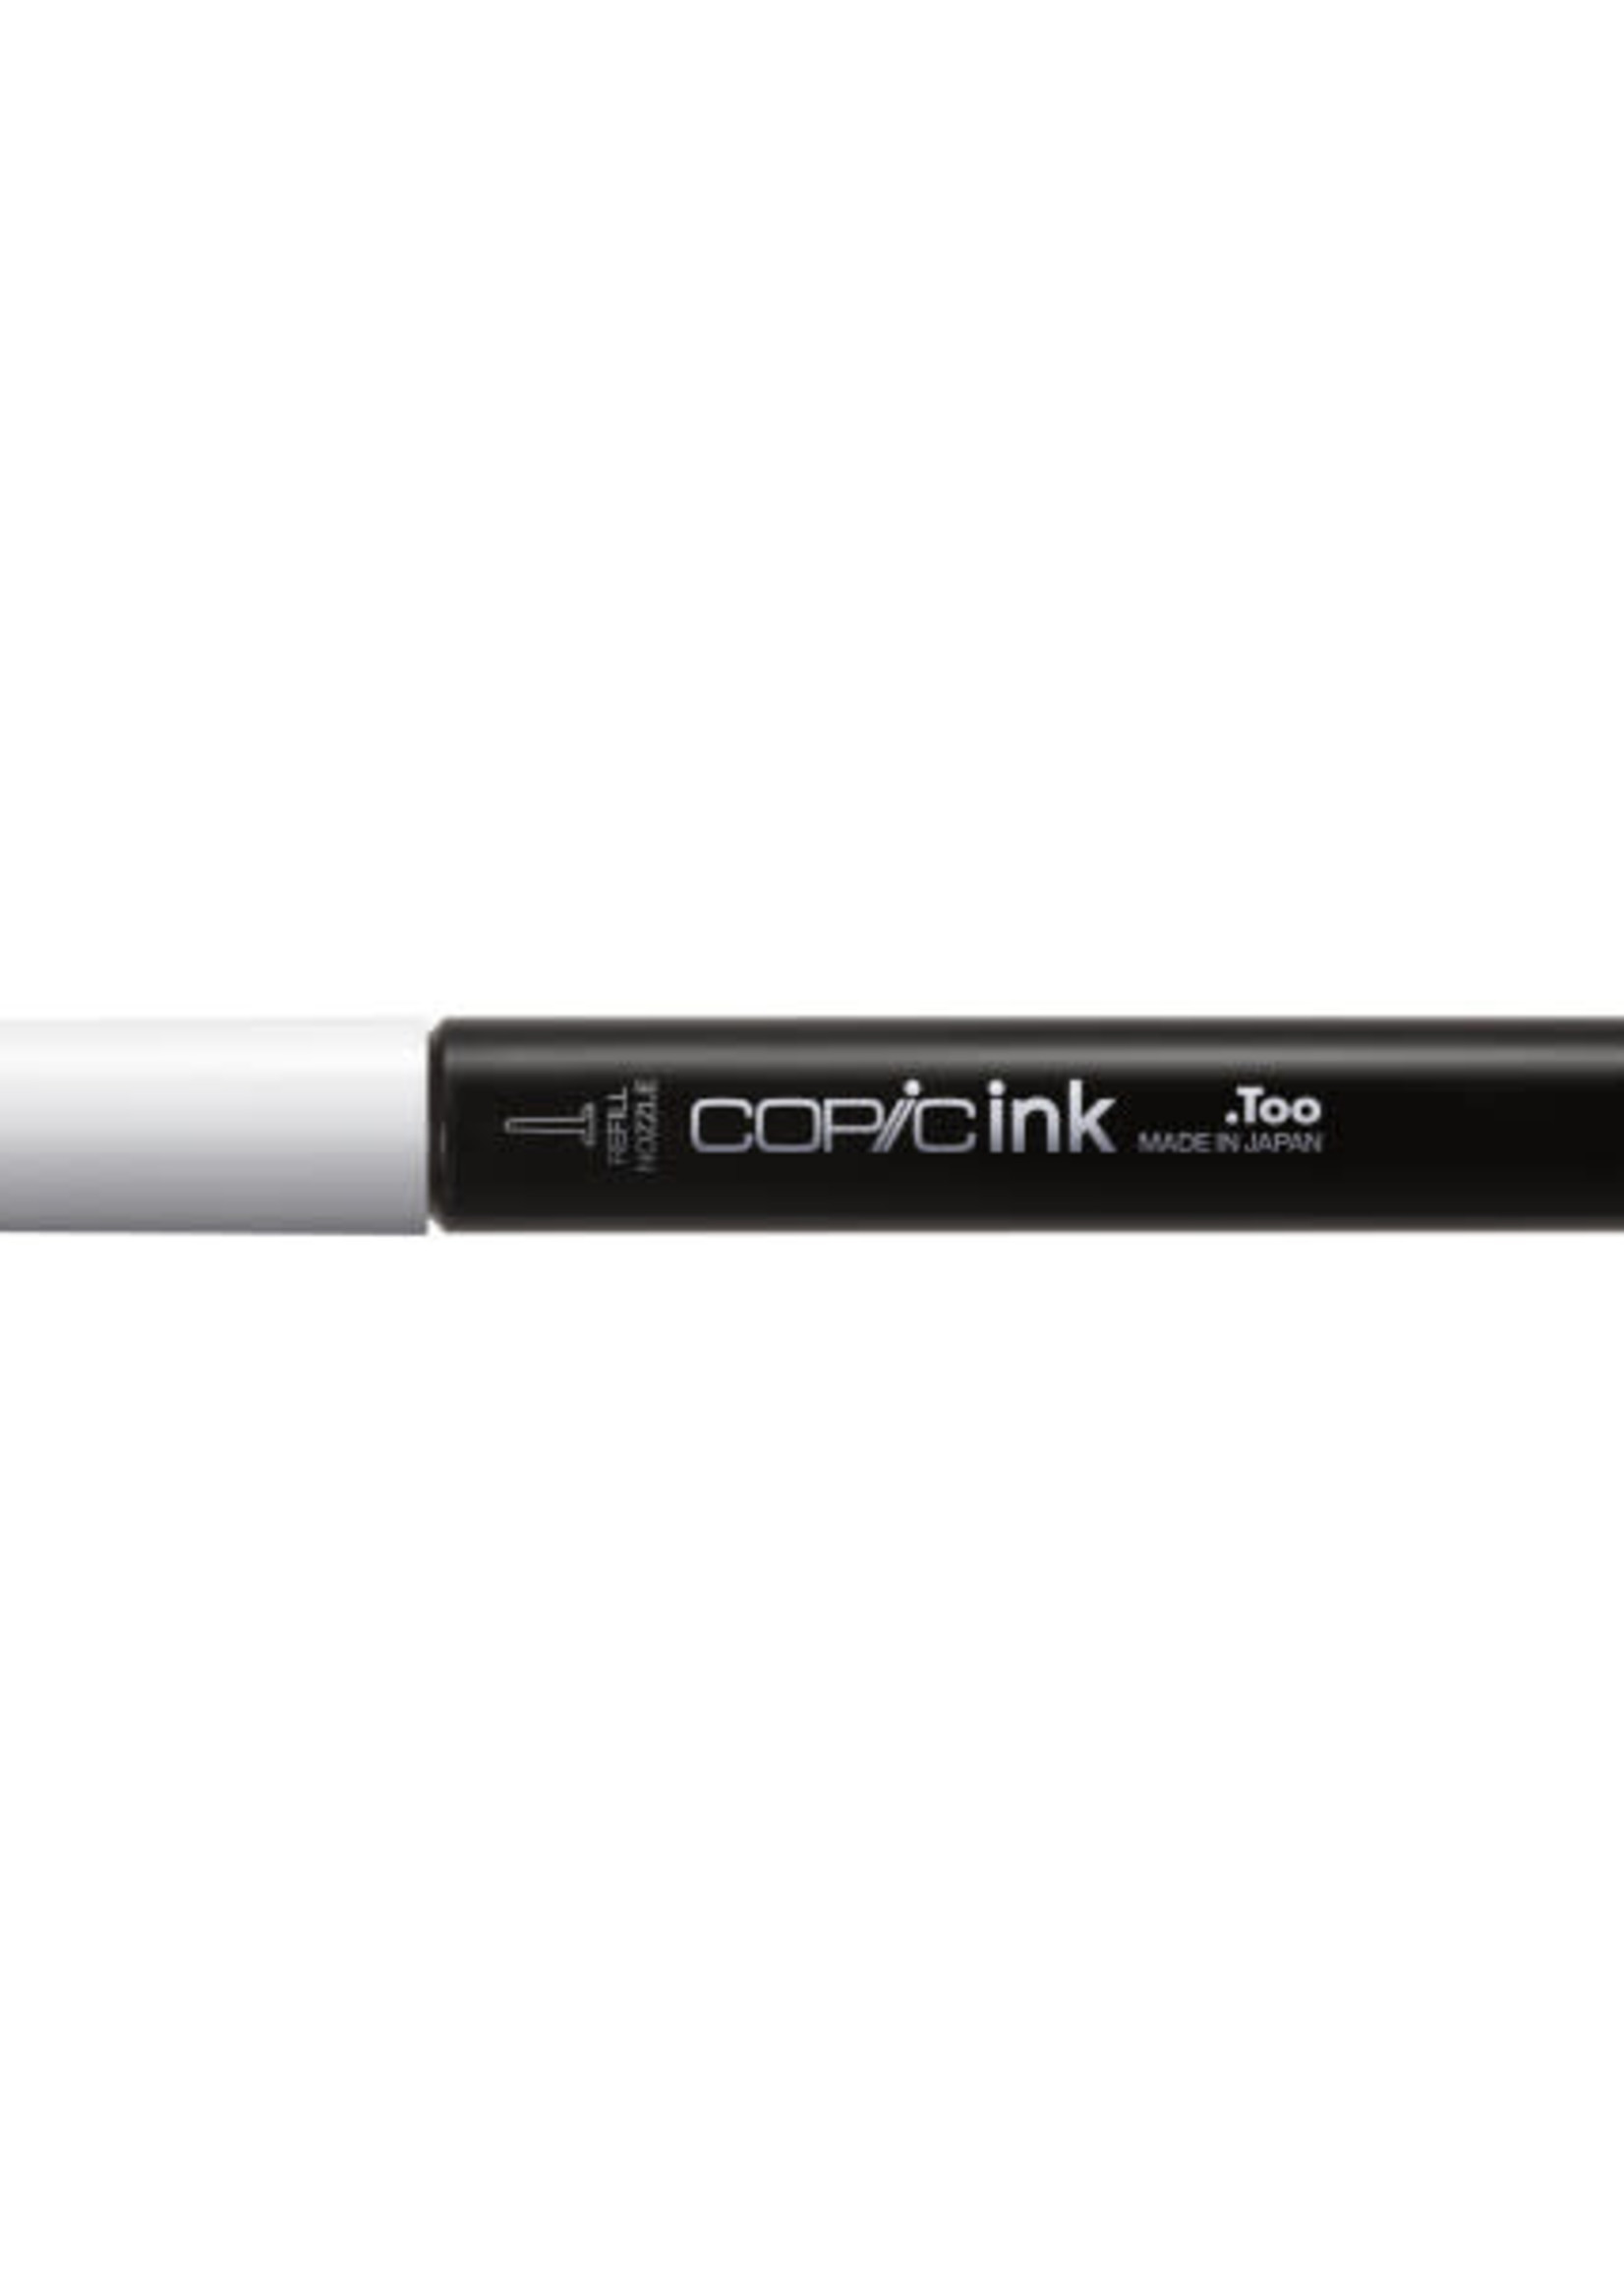 COPIC Ink 12ML Colors(a) E49 Dark Bark